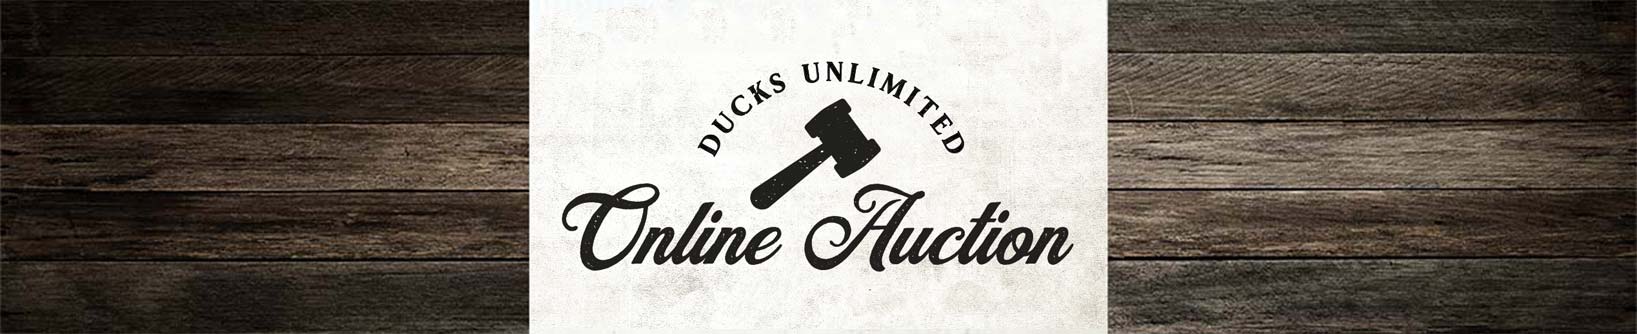 Ducks unlimited online auction